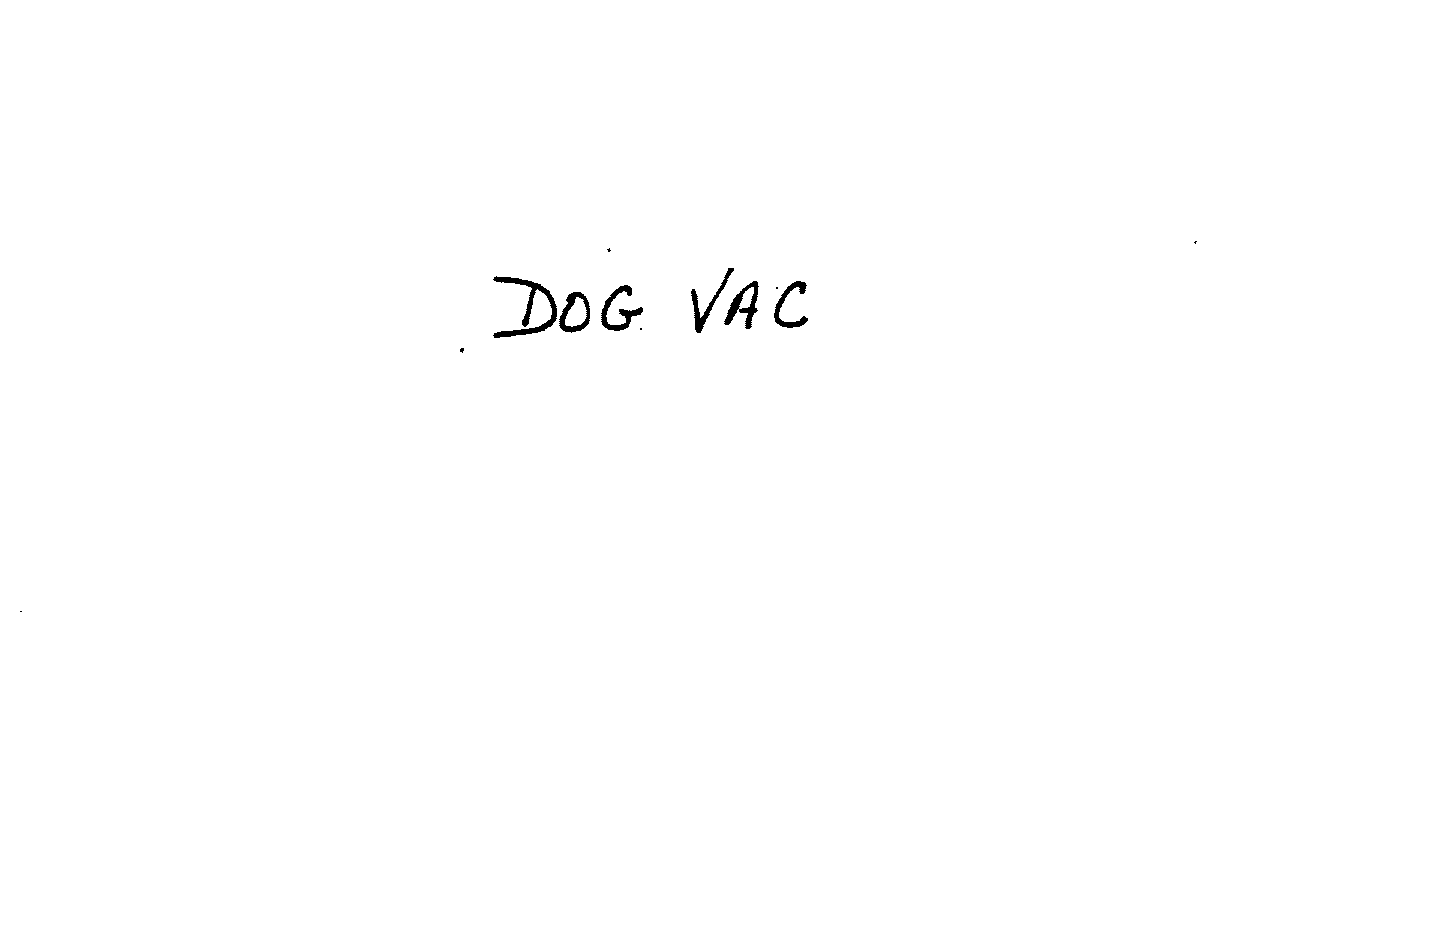  DOG VAC